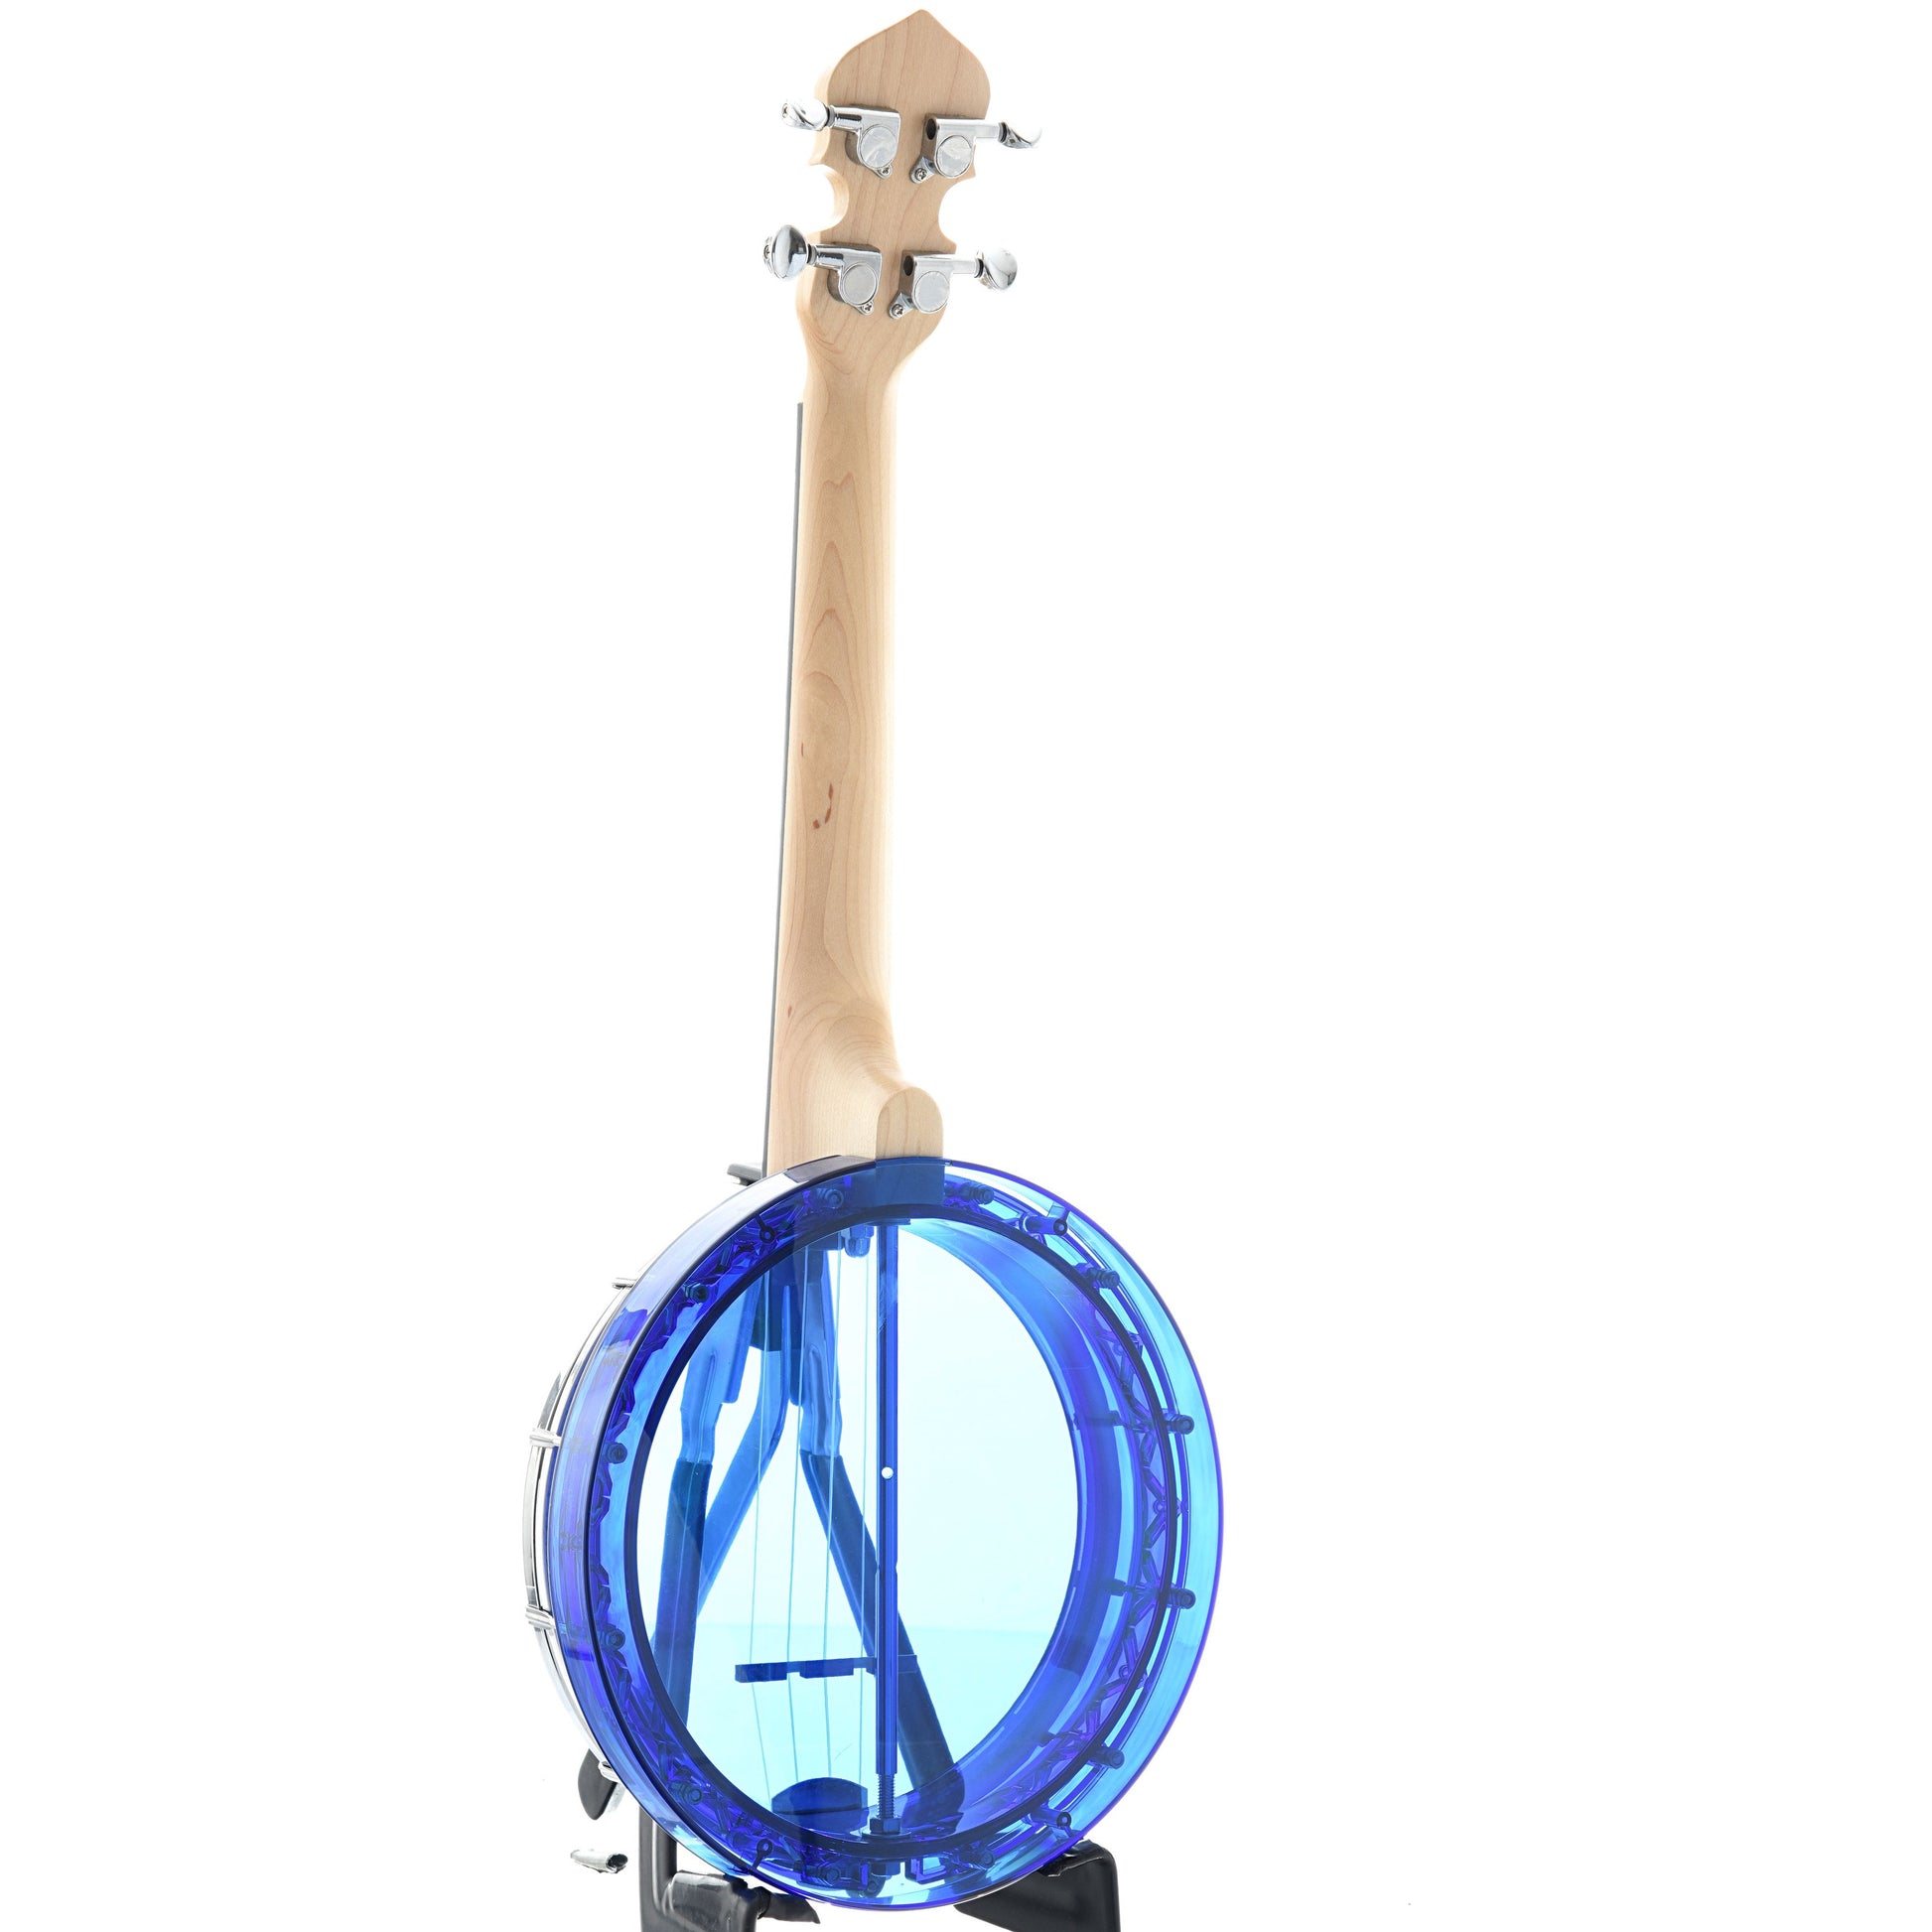 Image 9 of Gold Tone Little Gem Banjo Ukulele & Gigbag, Sapphire (blue) - SKU# LGEM-BLU : Product Type Banjo Ukuleles : Elderly Instruments